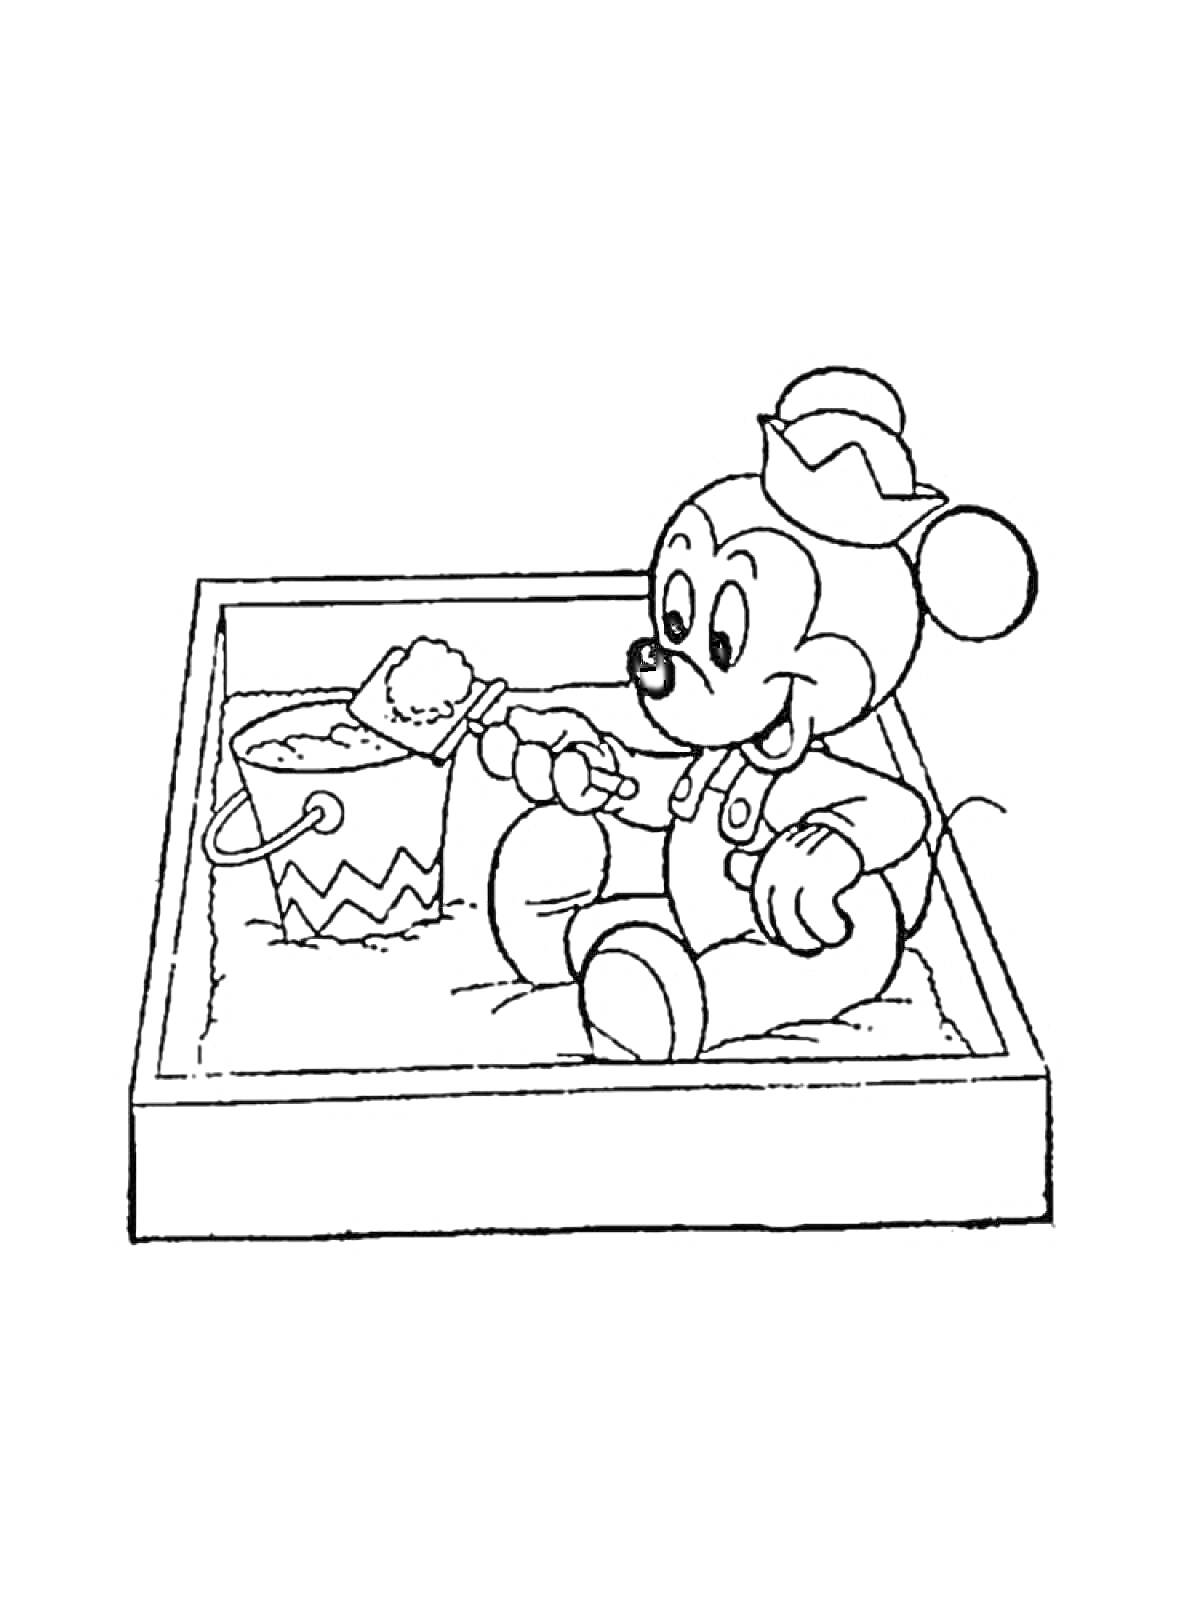 Раскраска Рисунок с мышонком в песочнице, держащего лопатку и ведёрко